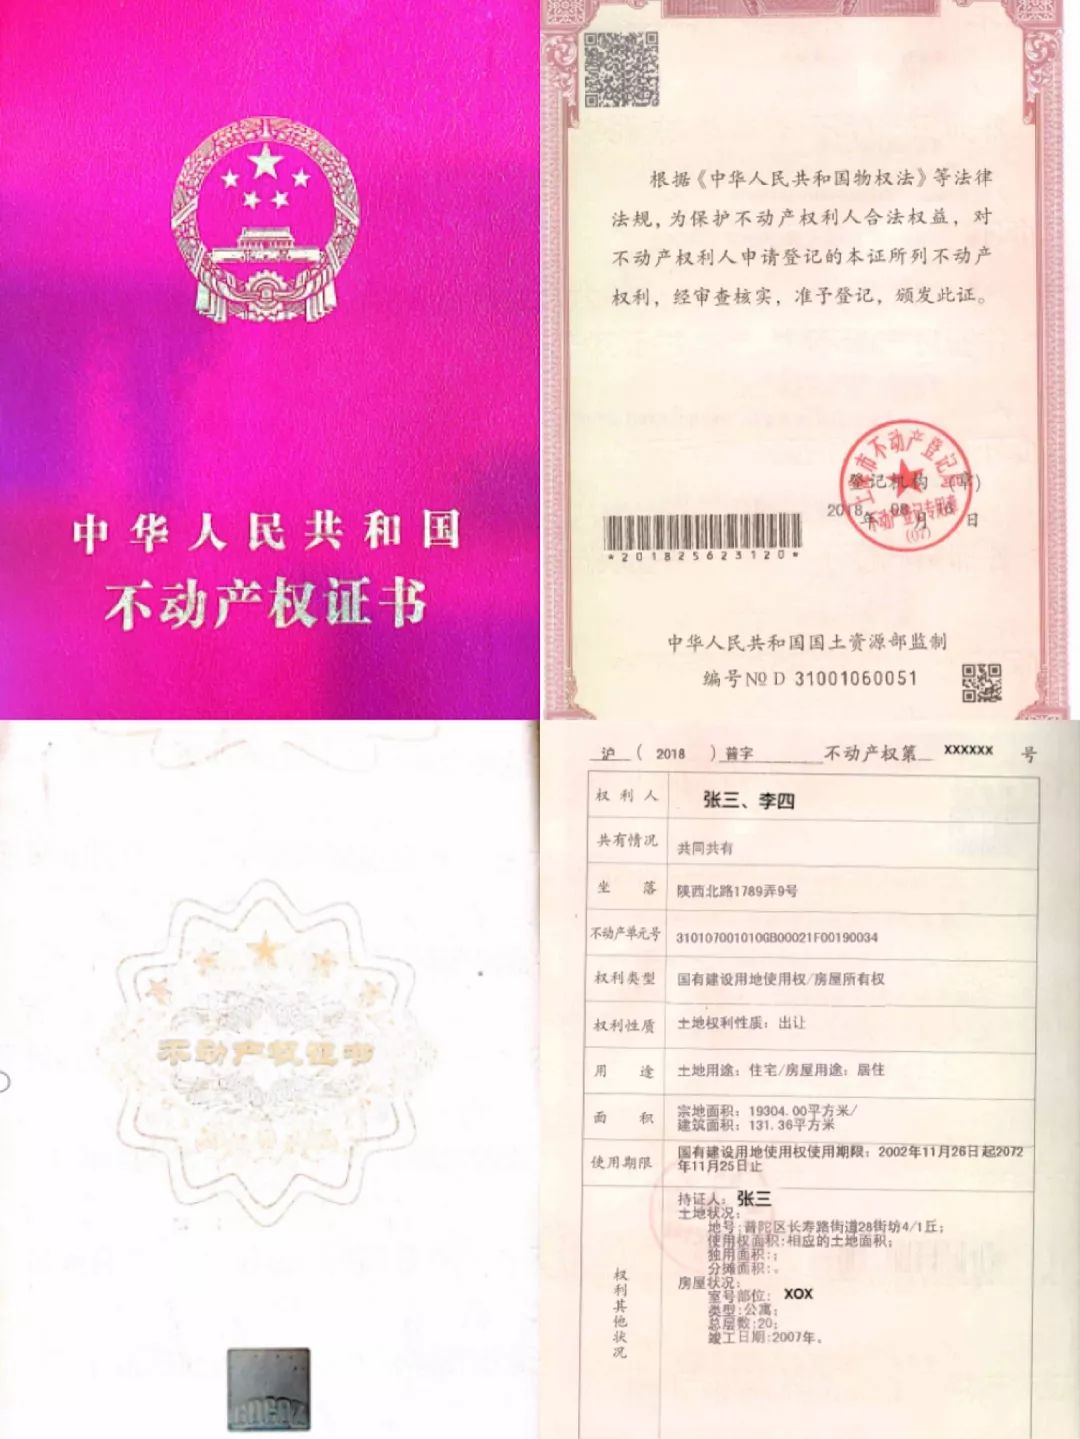 下图是上海市某处住宅的《不动产权证书》二,《不动产权证书》内容